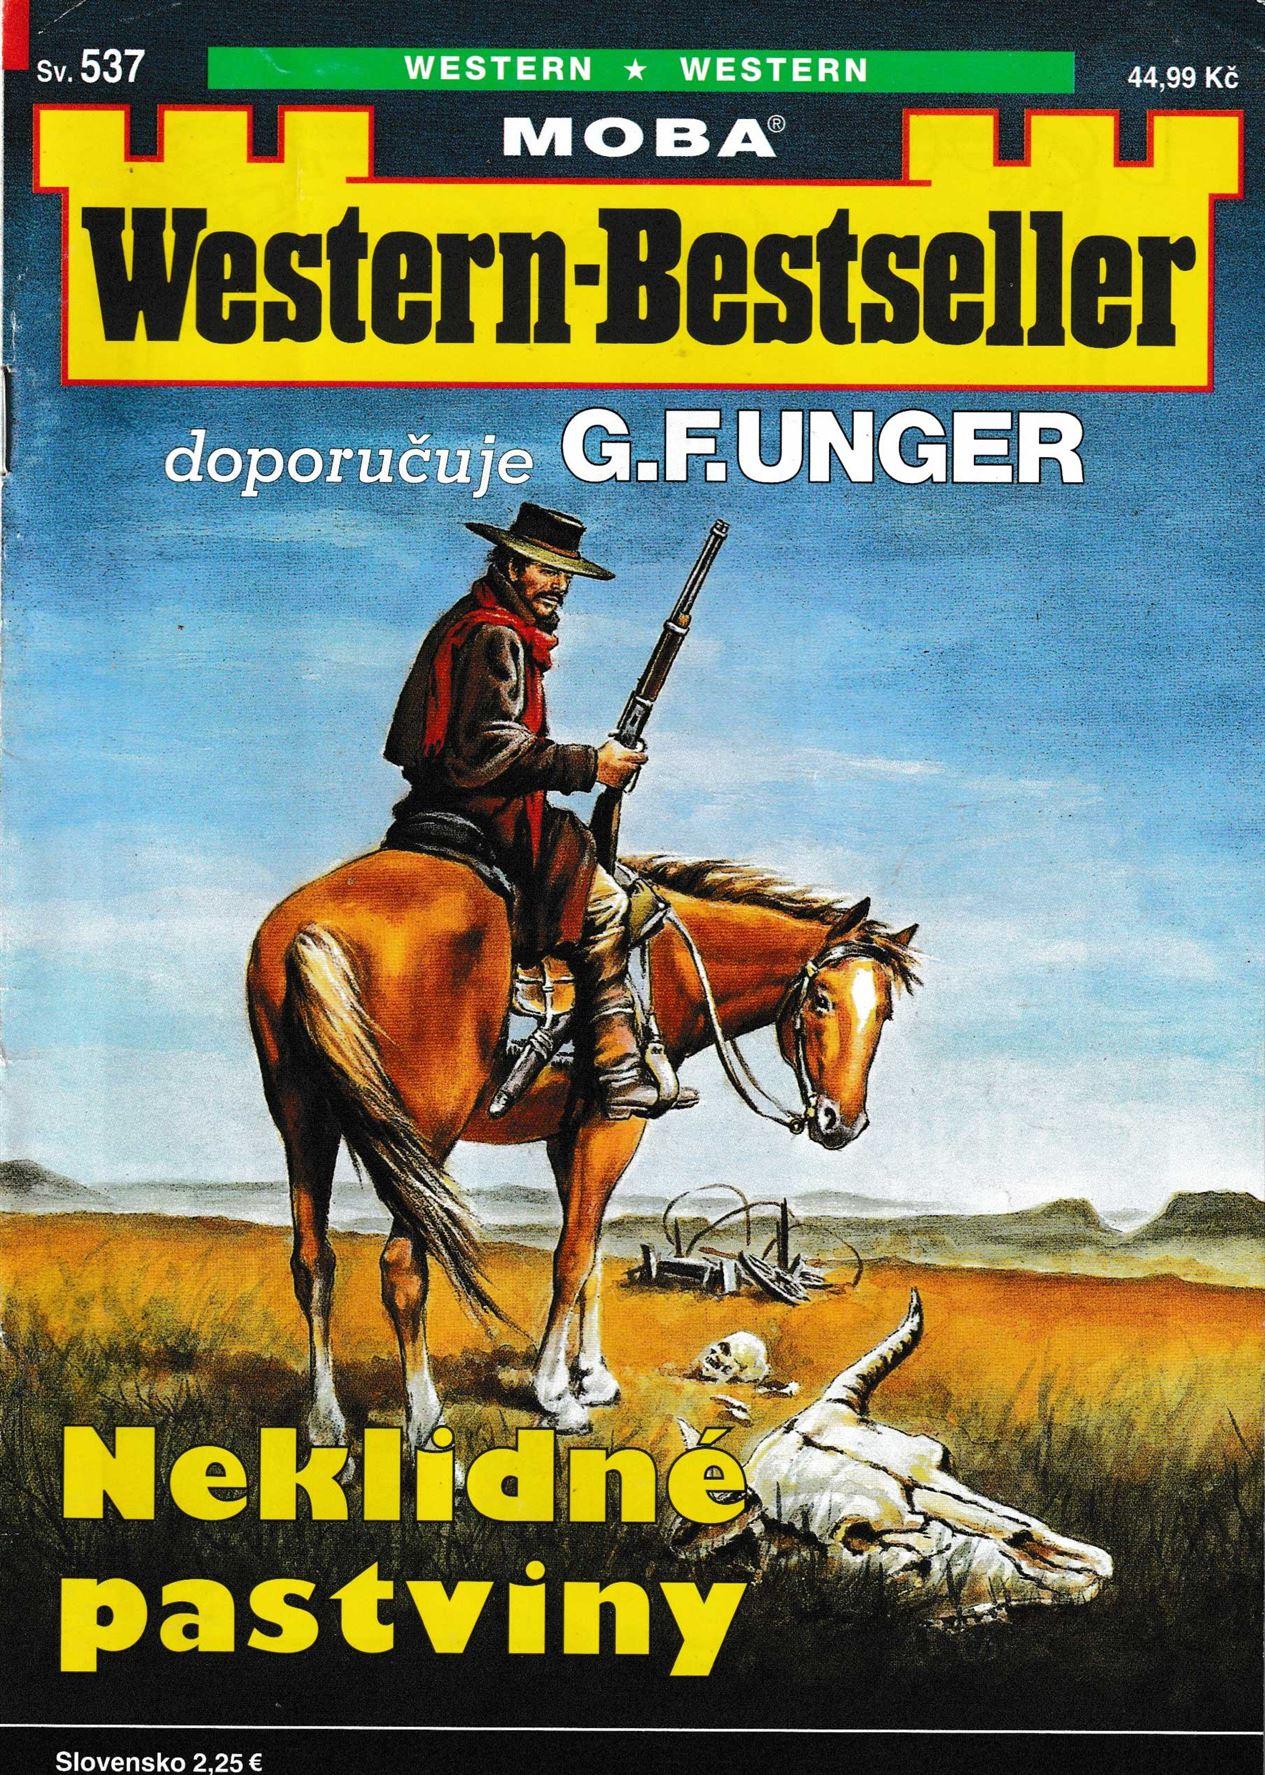 Western Bestsellers G.F.unger Vydání 537